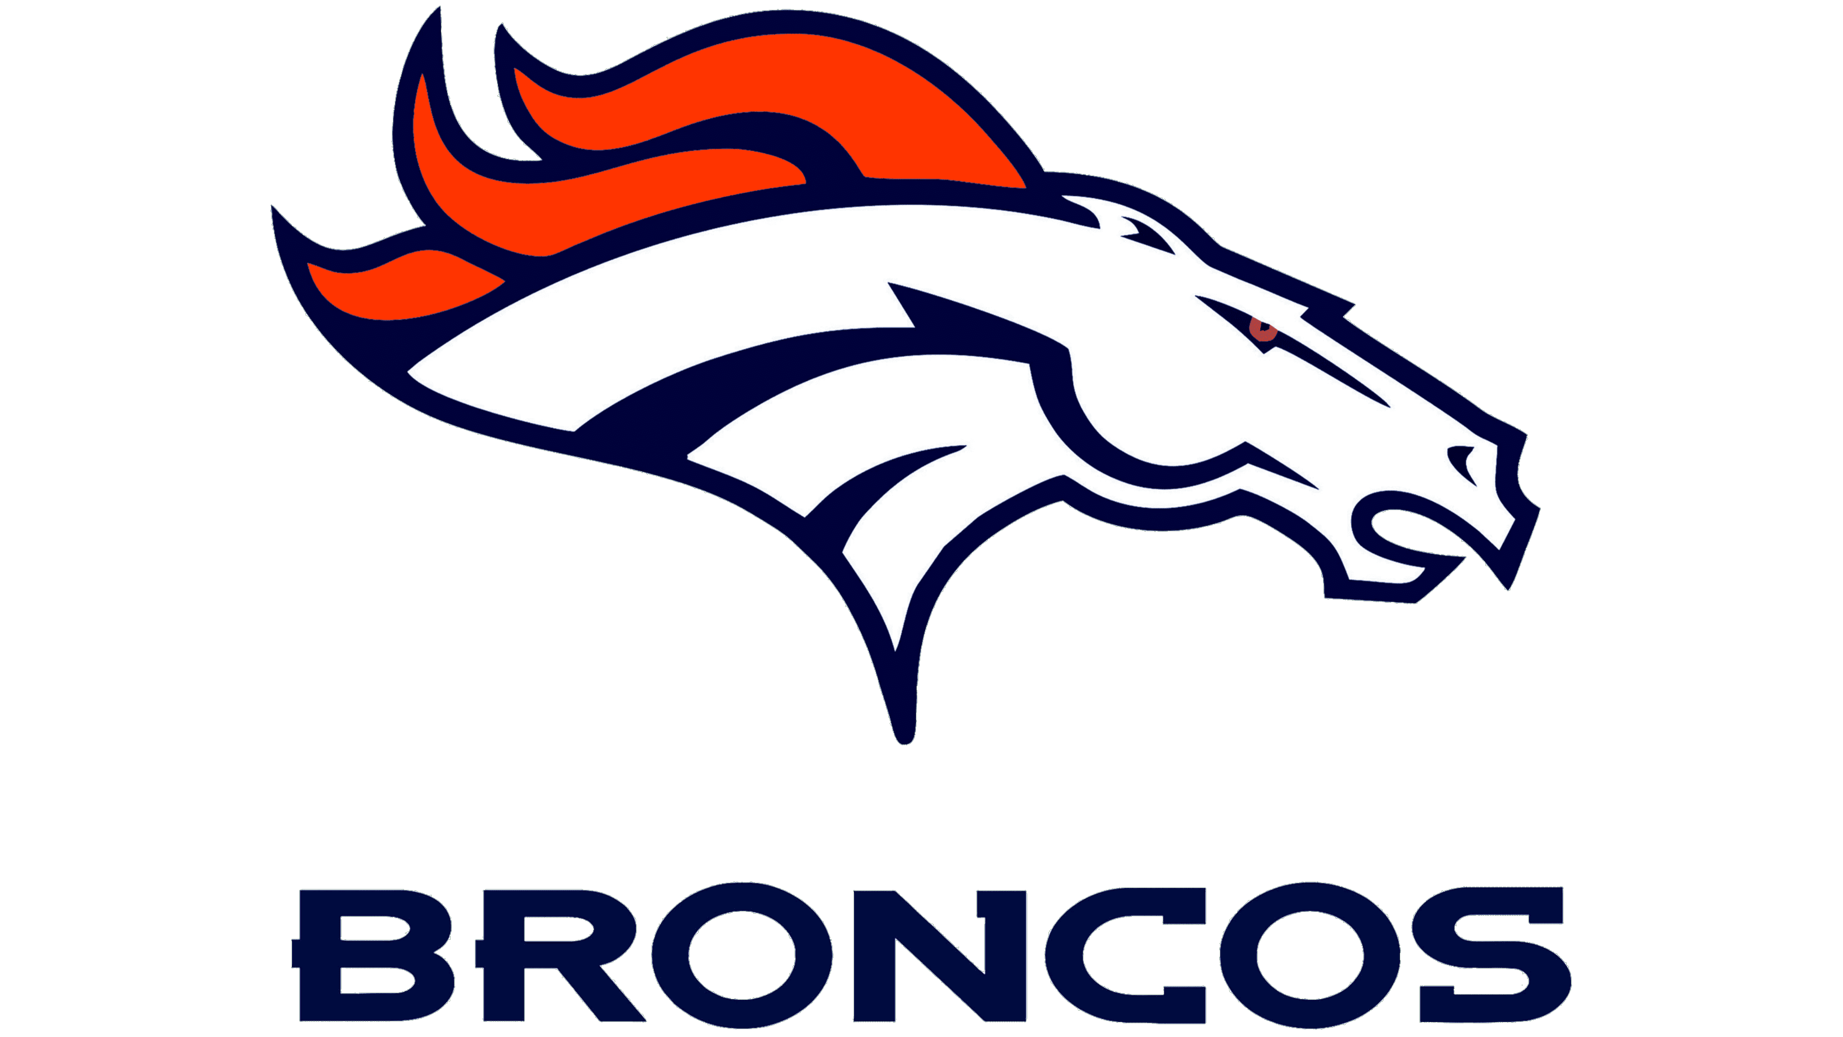 Denver broncos logo